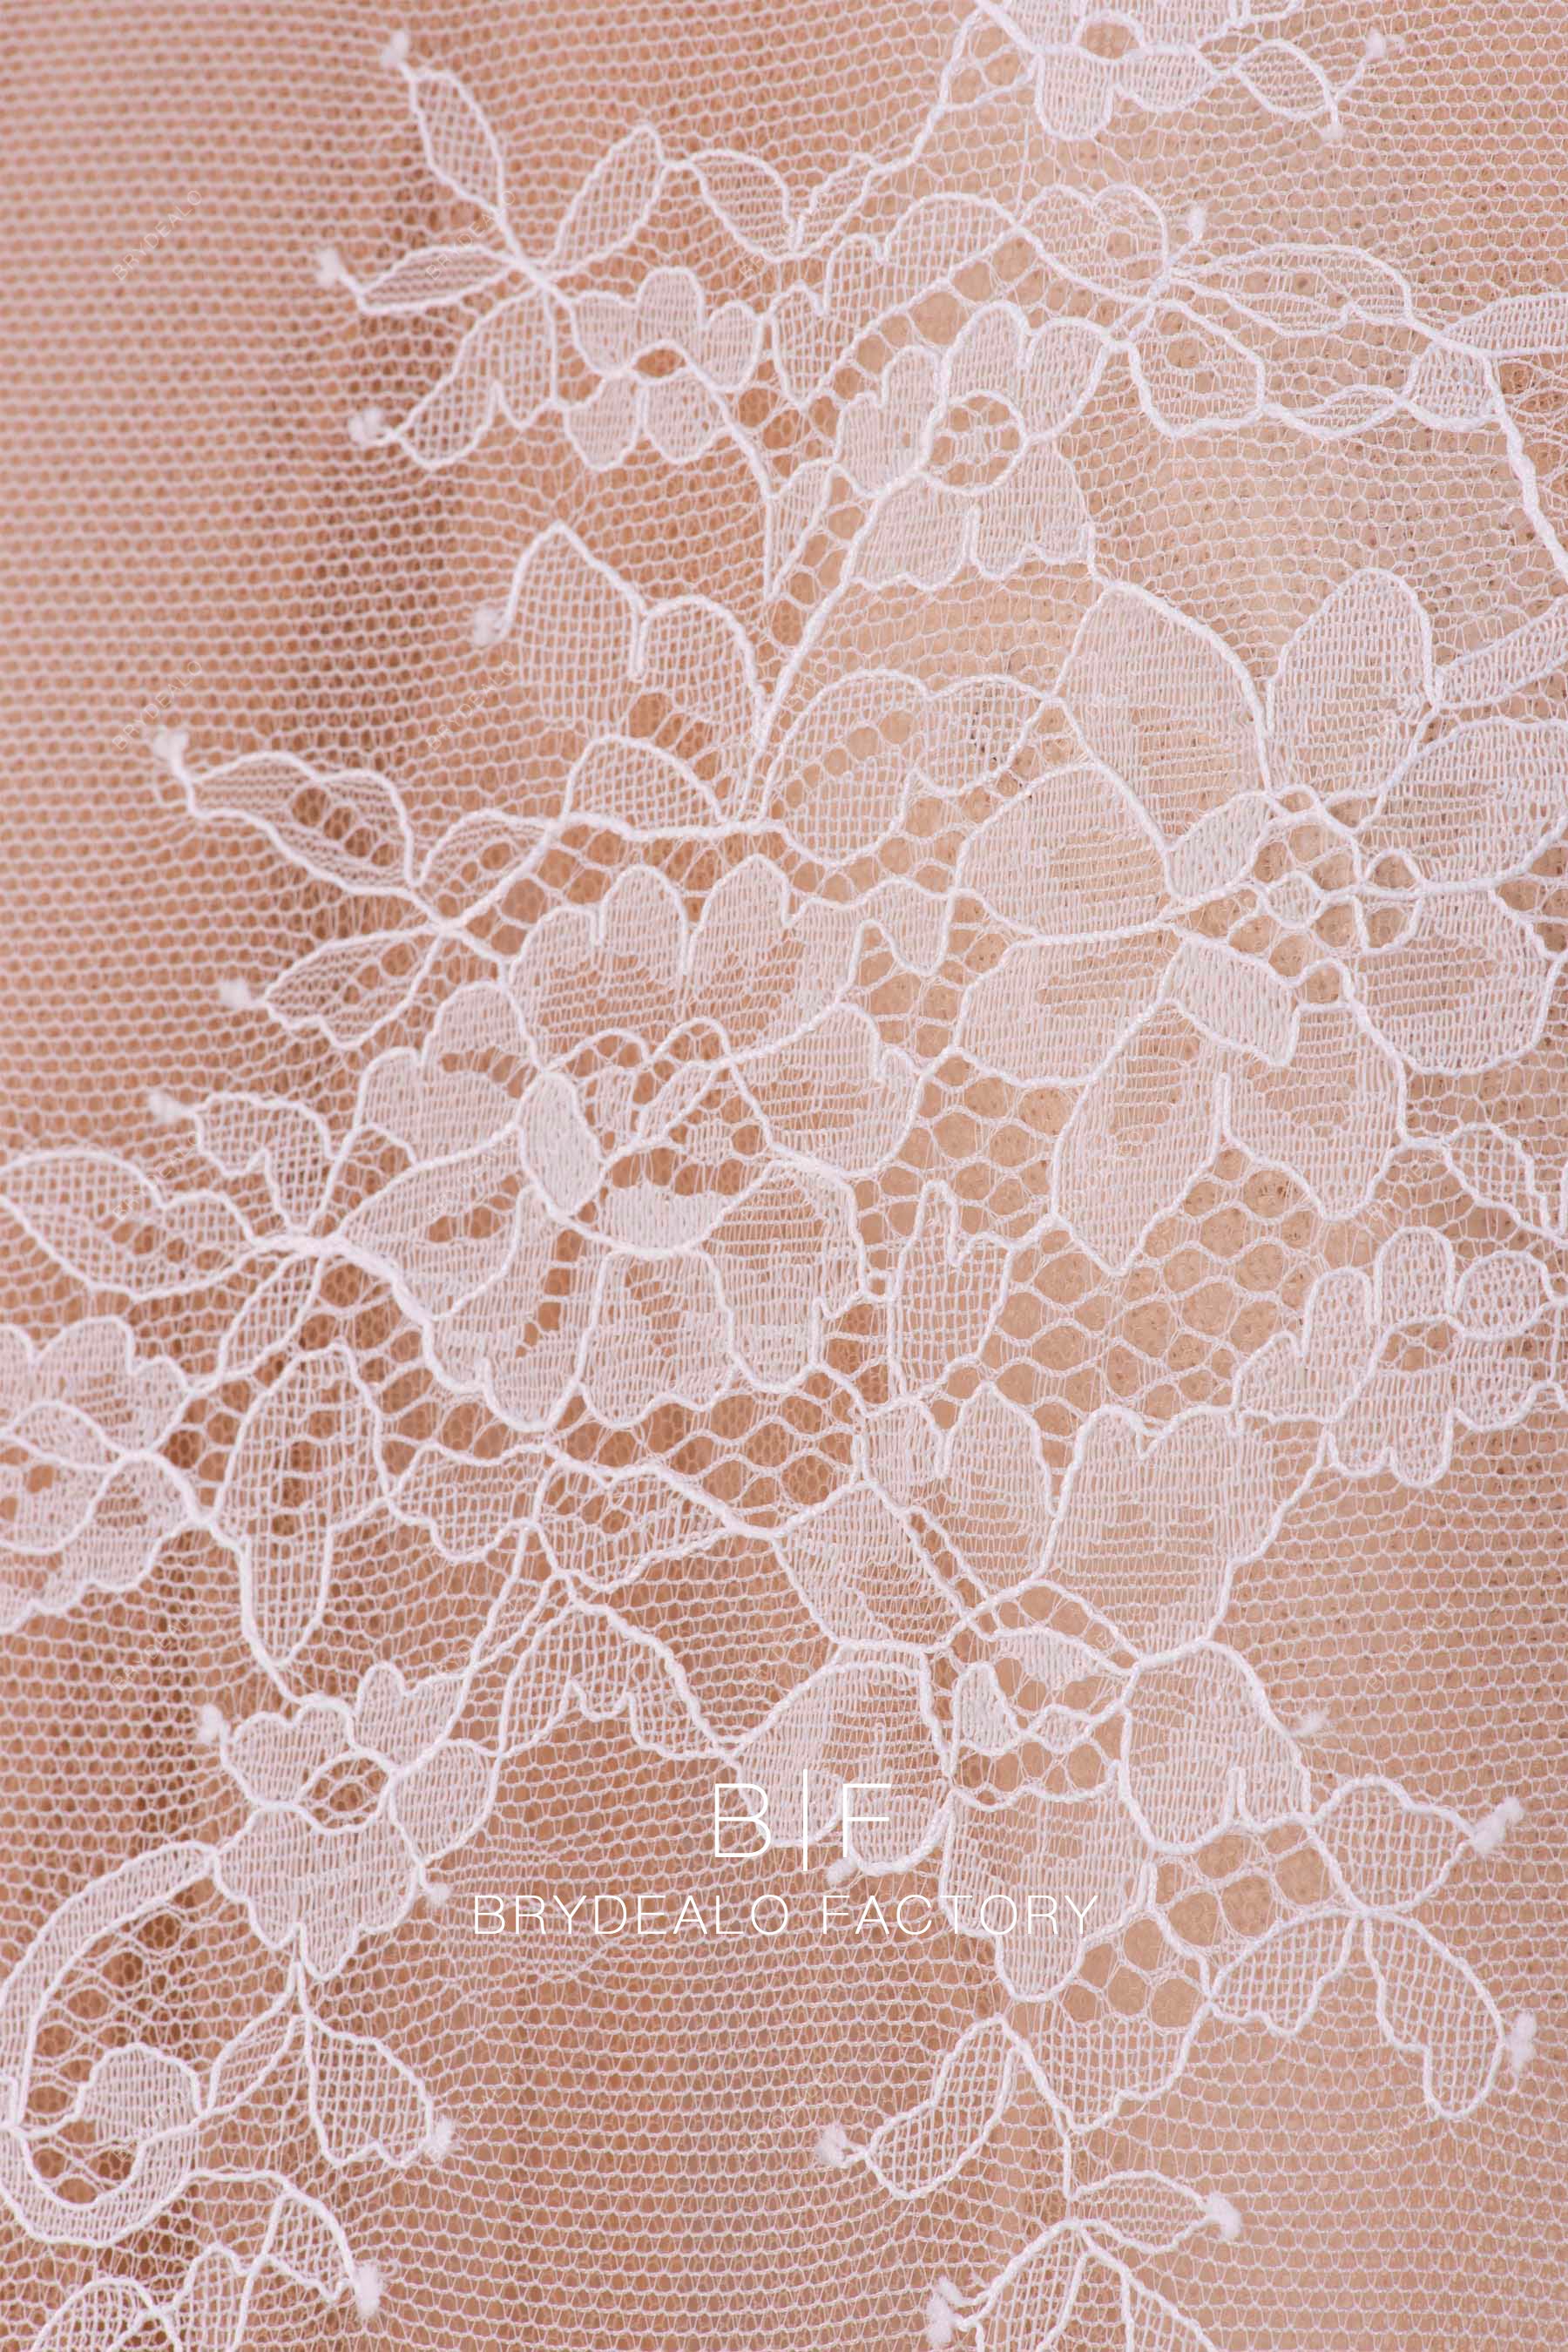 flower lace